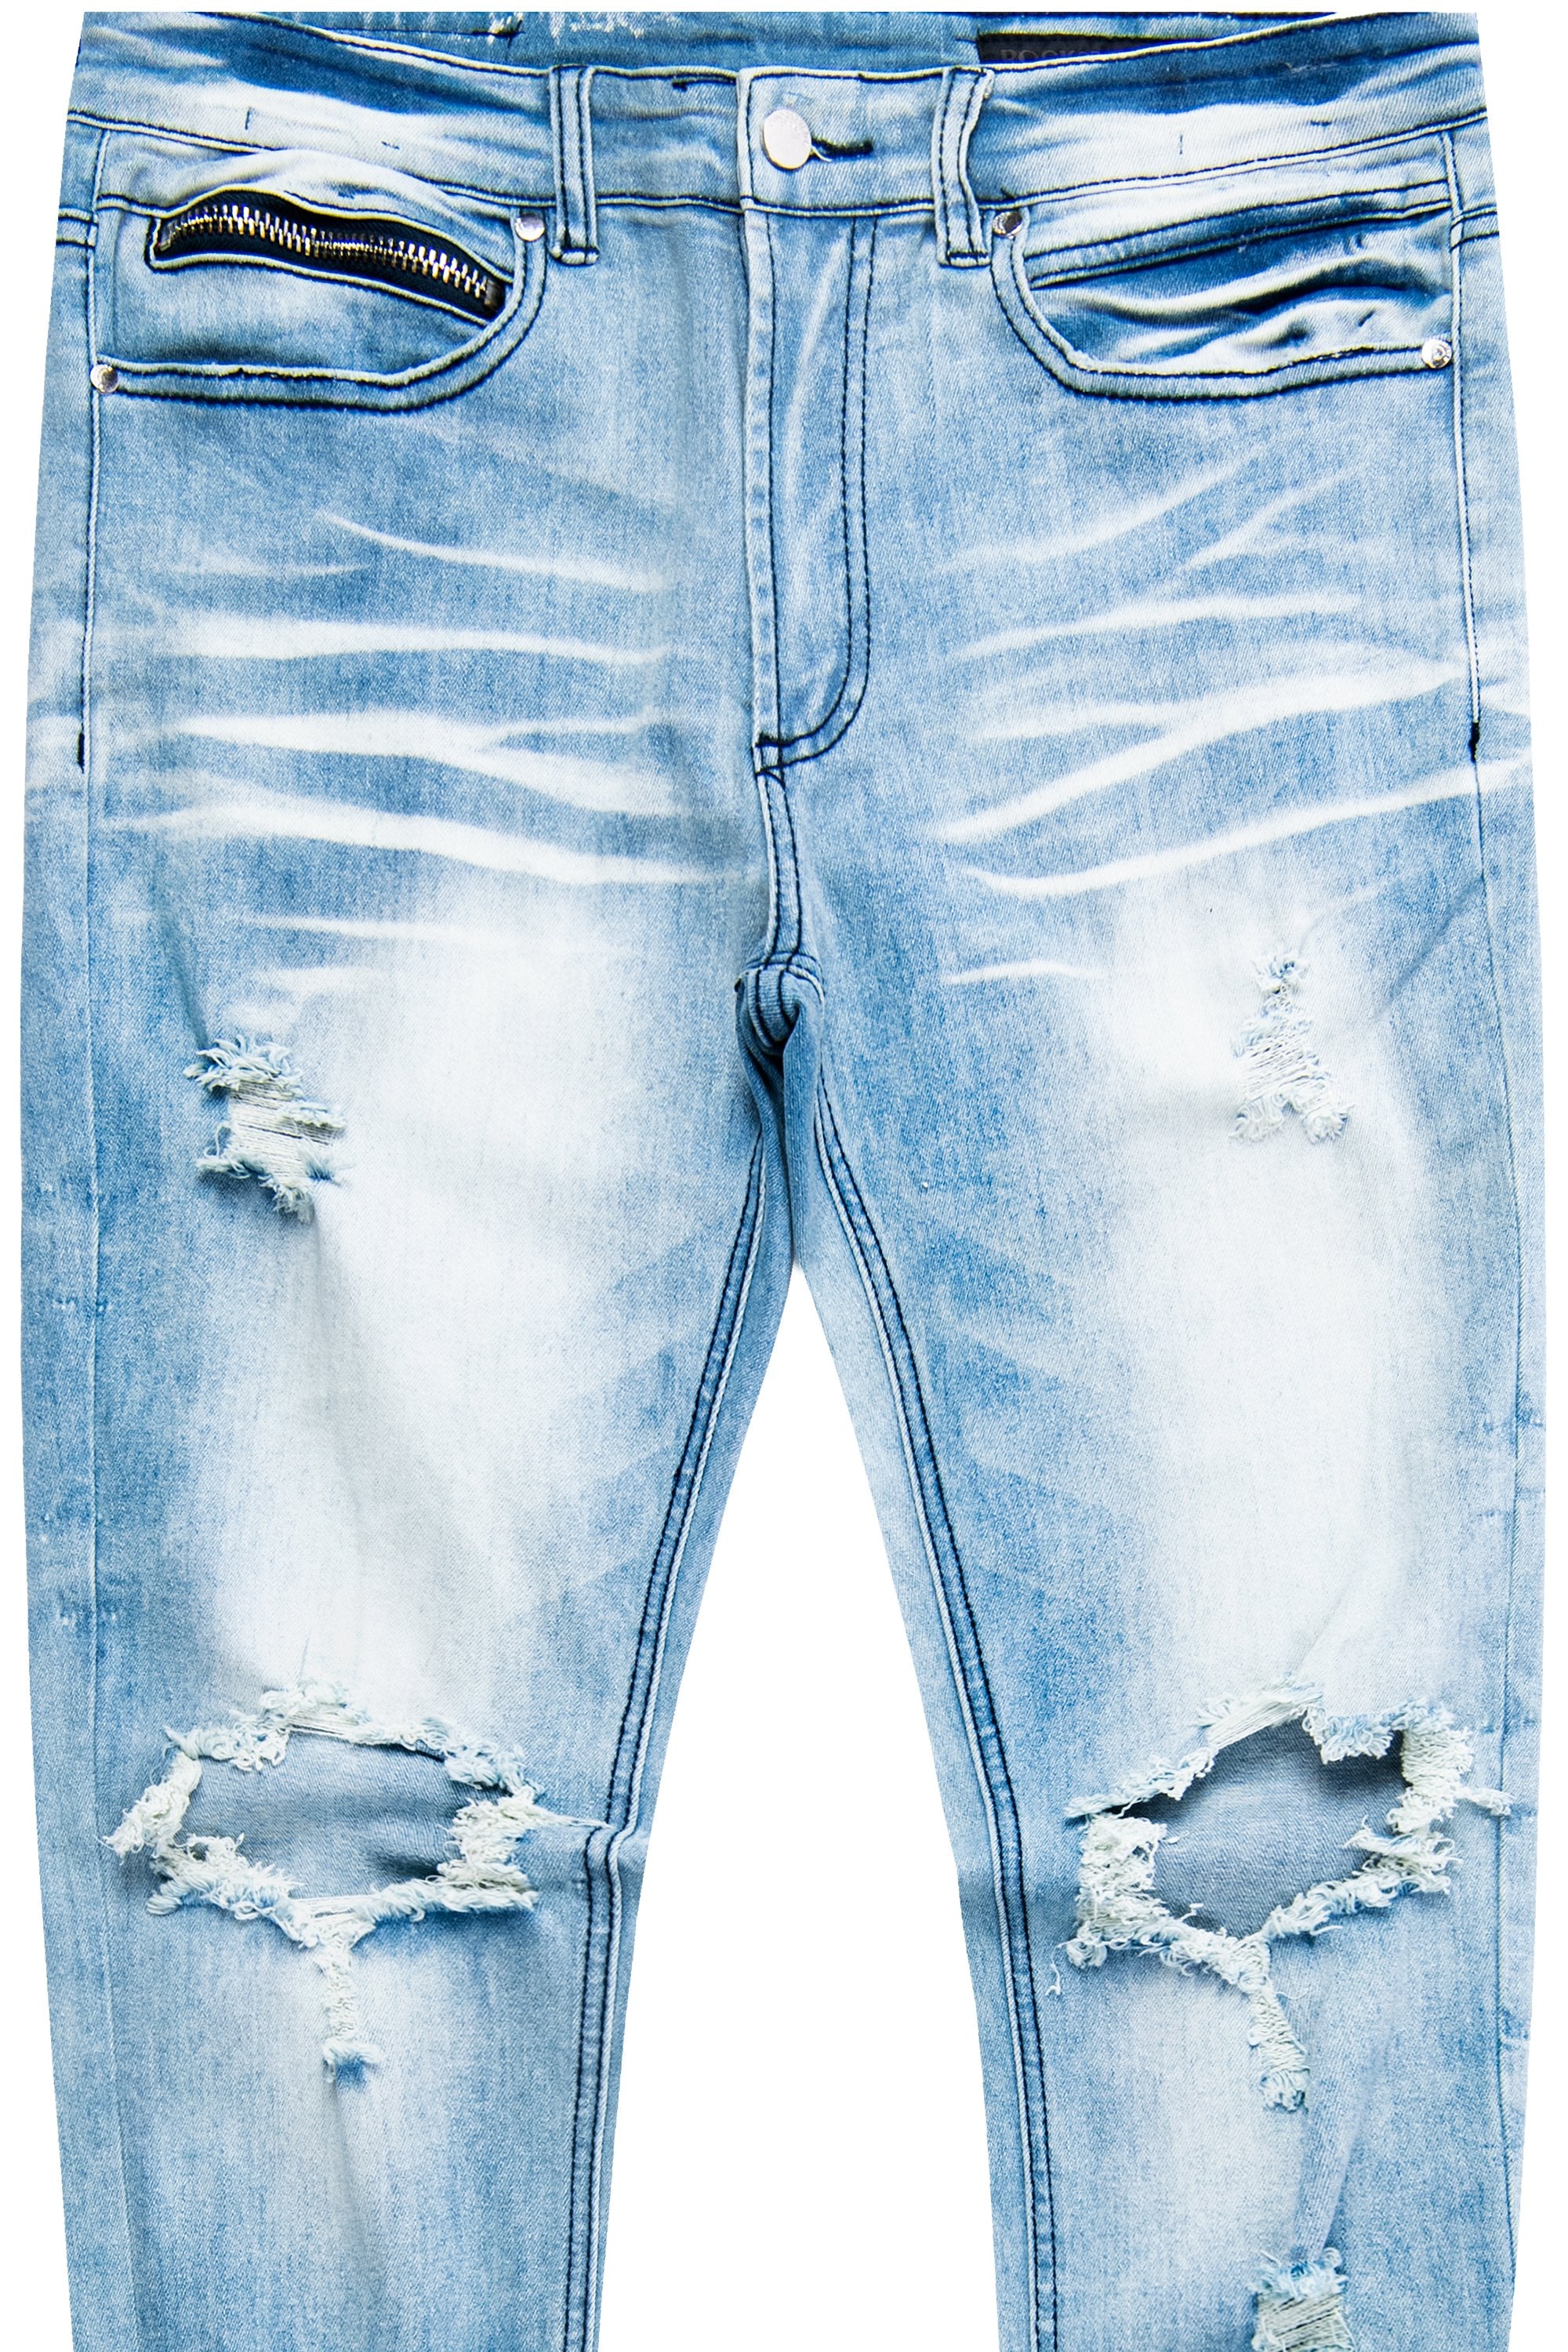 Neues Modell Dag 5 Pocket Jean- Original Rockstar Blue–